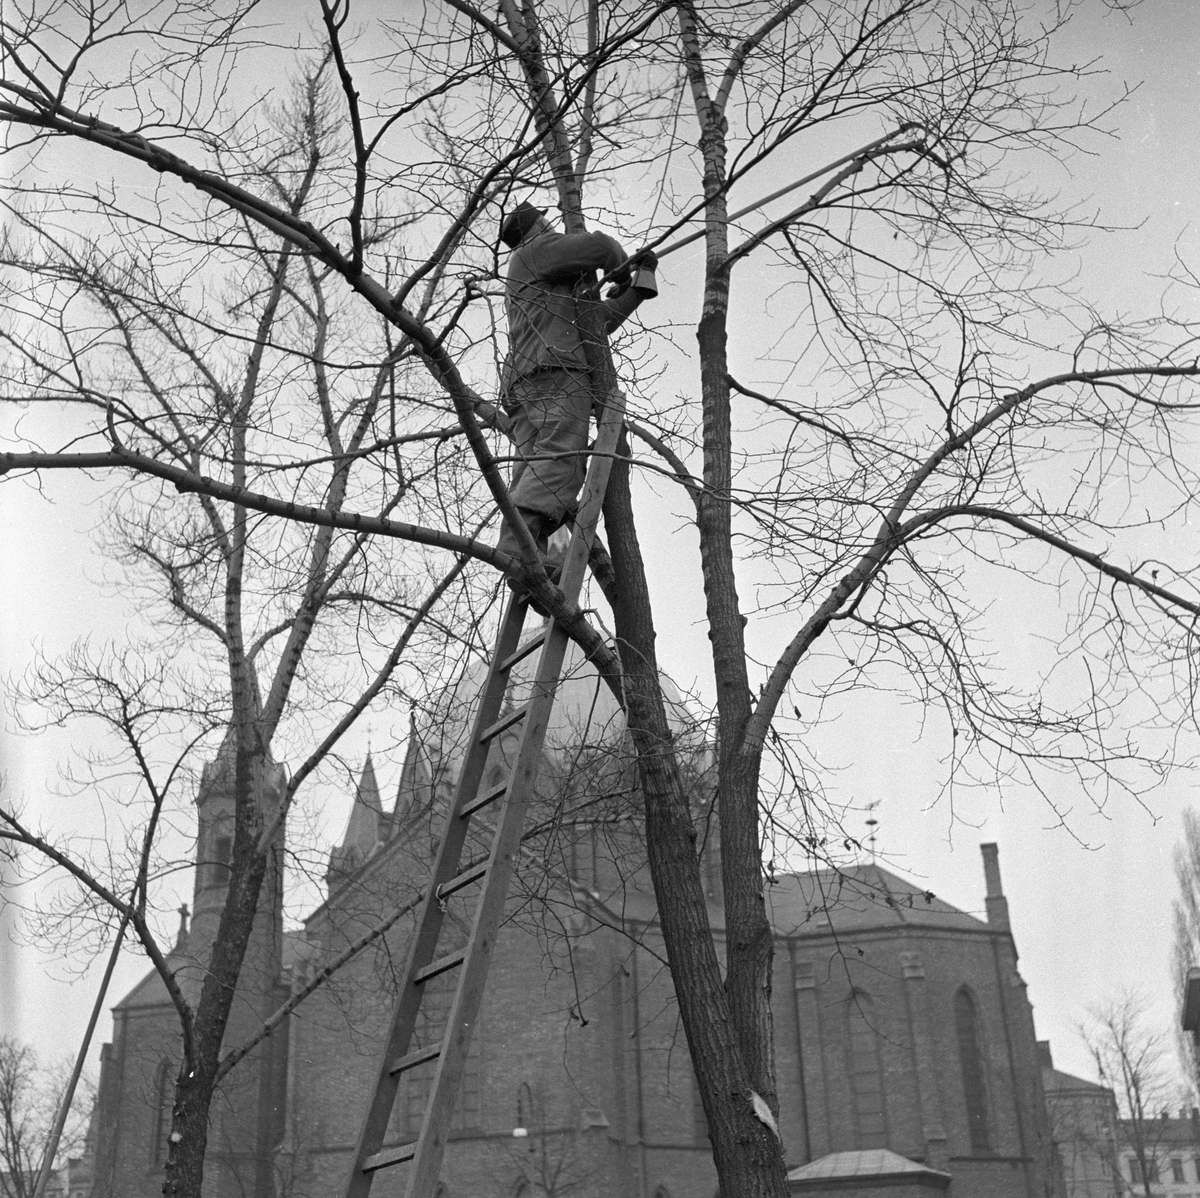 Trær i Oslo.  Kutting av kvister.  Kirke i bakgrunn.
Fotografert 1957.